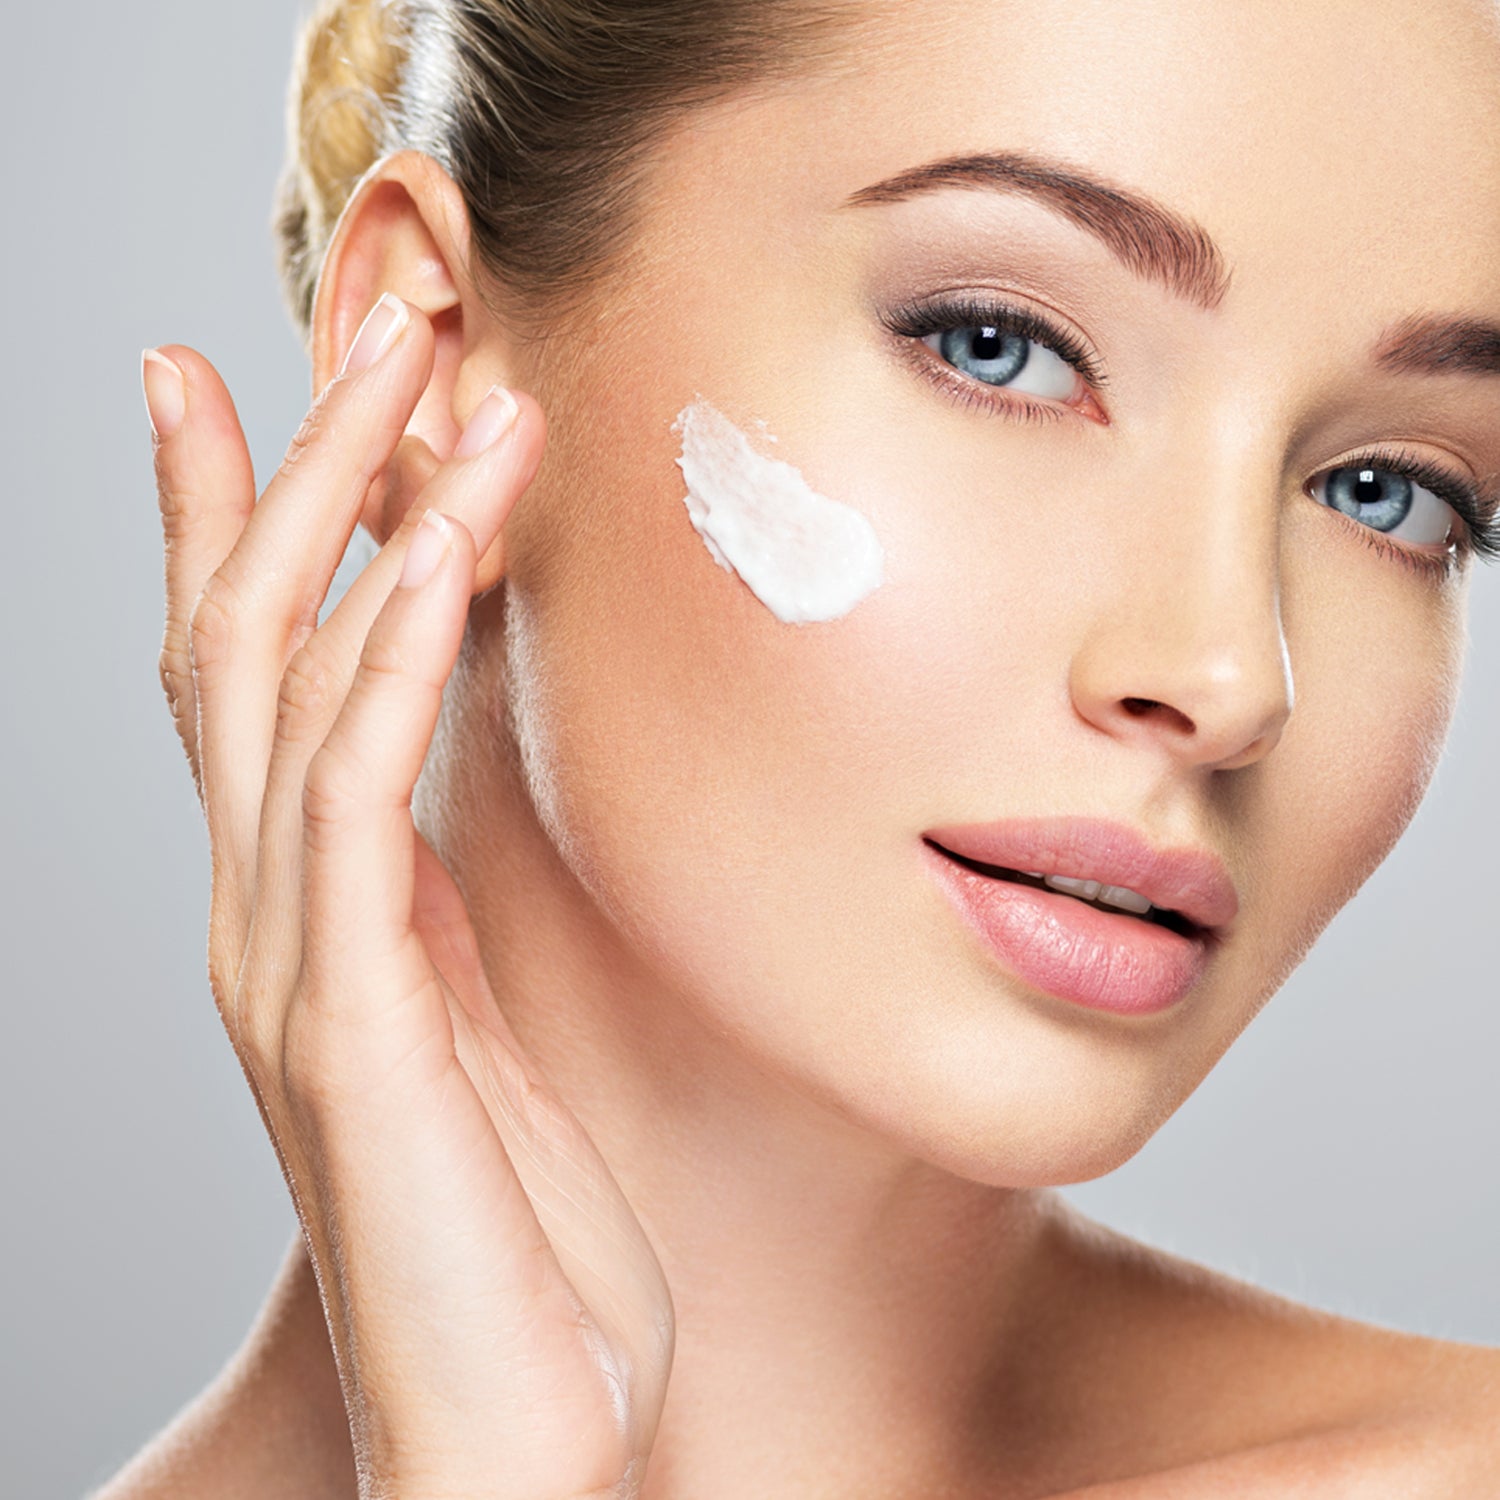 The Cure - Deep Repair Facial Night Cream - Deborah Lippmann